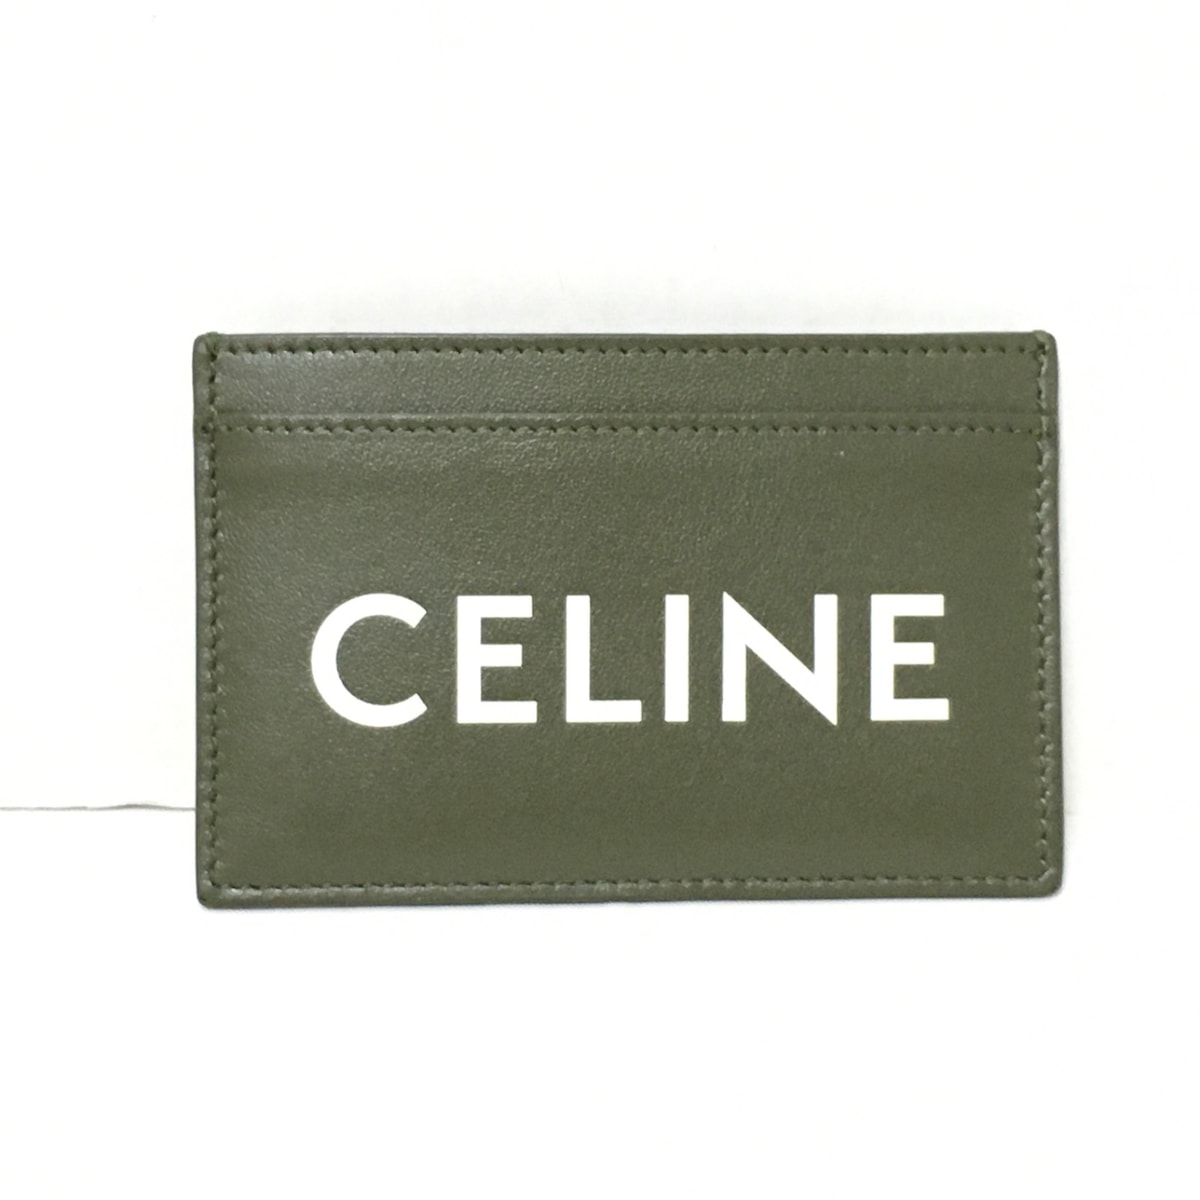 【中古】CELINE(セリーヌ) カードケース ダークオリーブ レザー